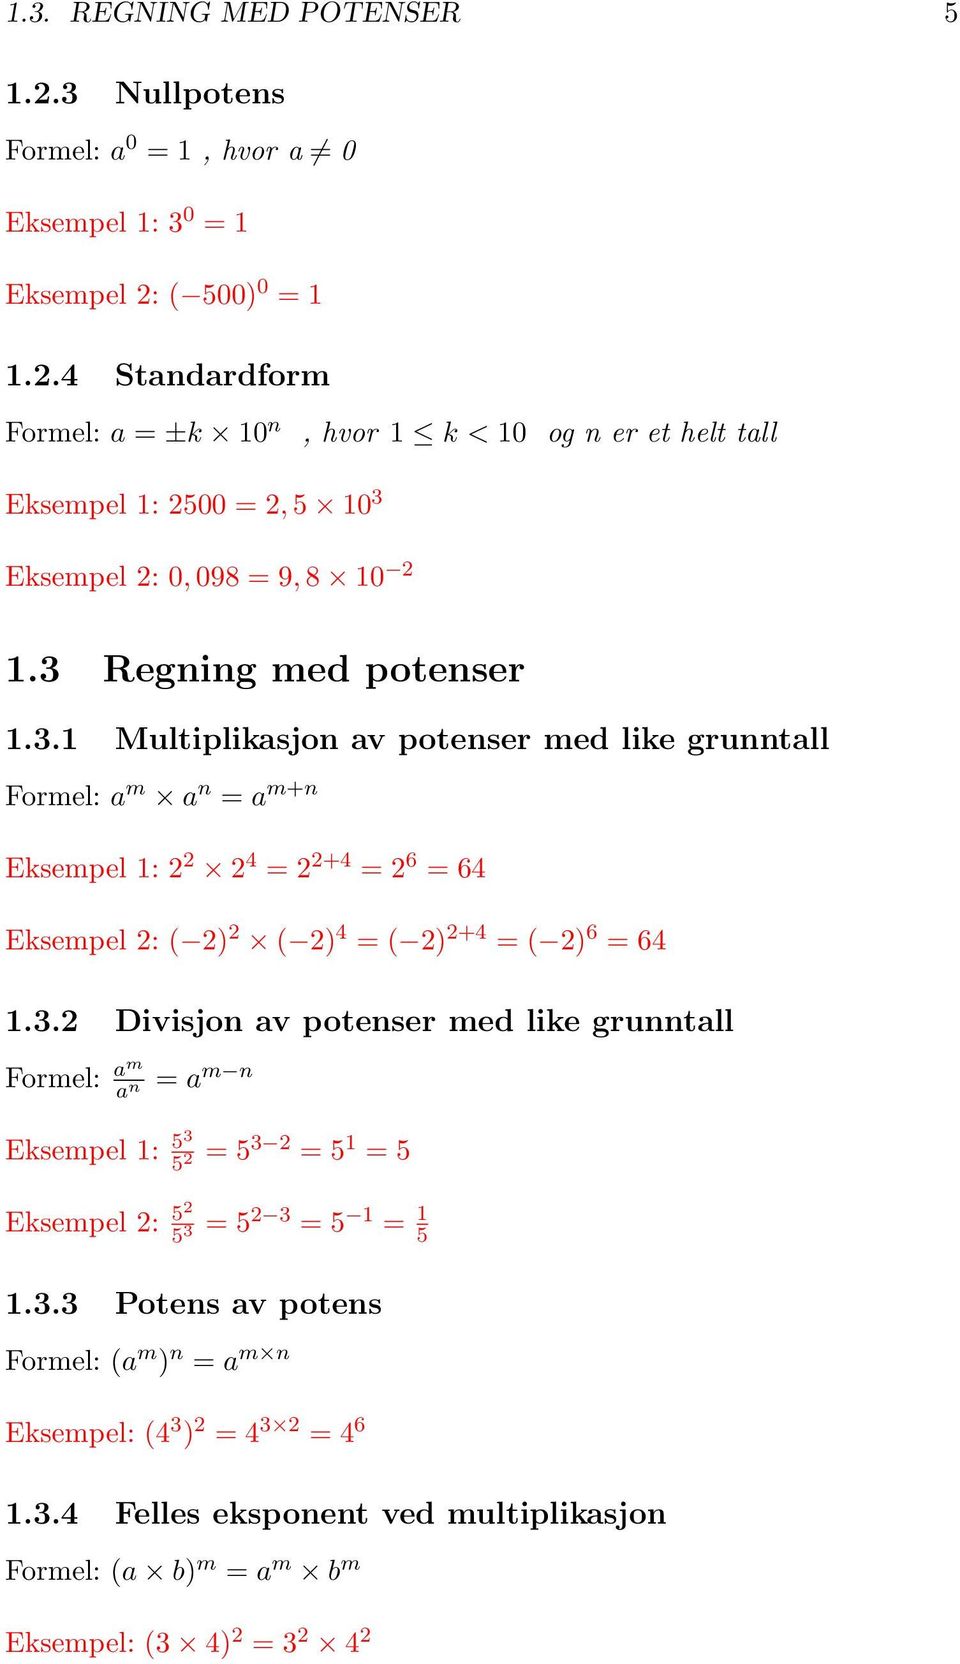 3.2 Divisjon av potenser med like grunntall am a n = a m n Eksempel 1: 53 5 2 = 5 3 2 = 5 1 = 5 Eksempel 2: 52 5 3 = 5 2 3 = 5 1 = 1 5 1.3.3 Potens av potens (a m ) n = a m n Eksempel: (4 3 ) 2 = 4 3 2 = 4 6 1.